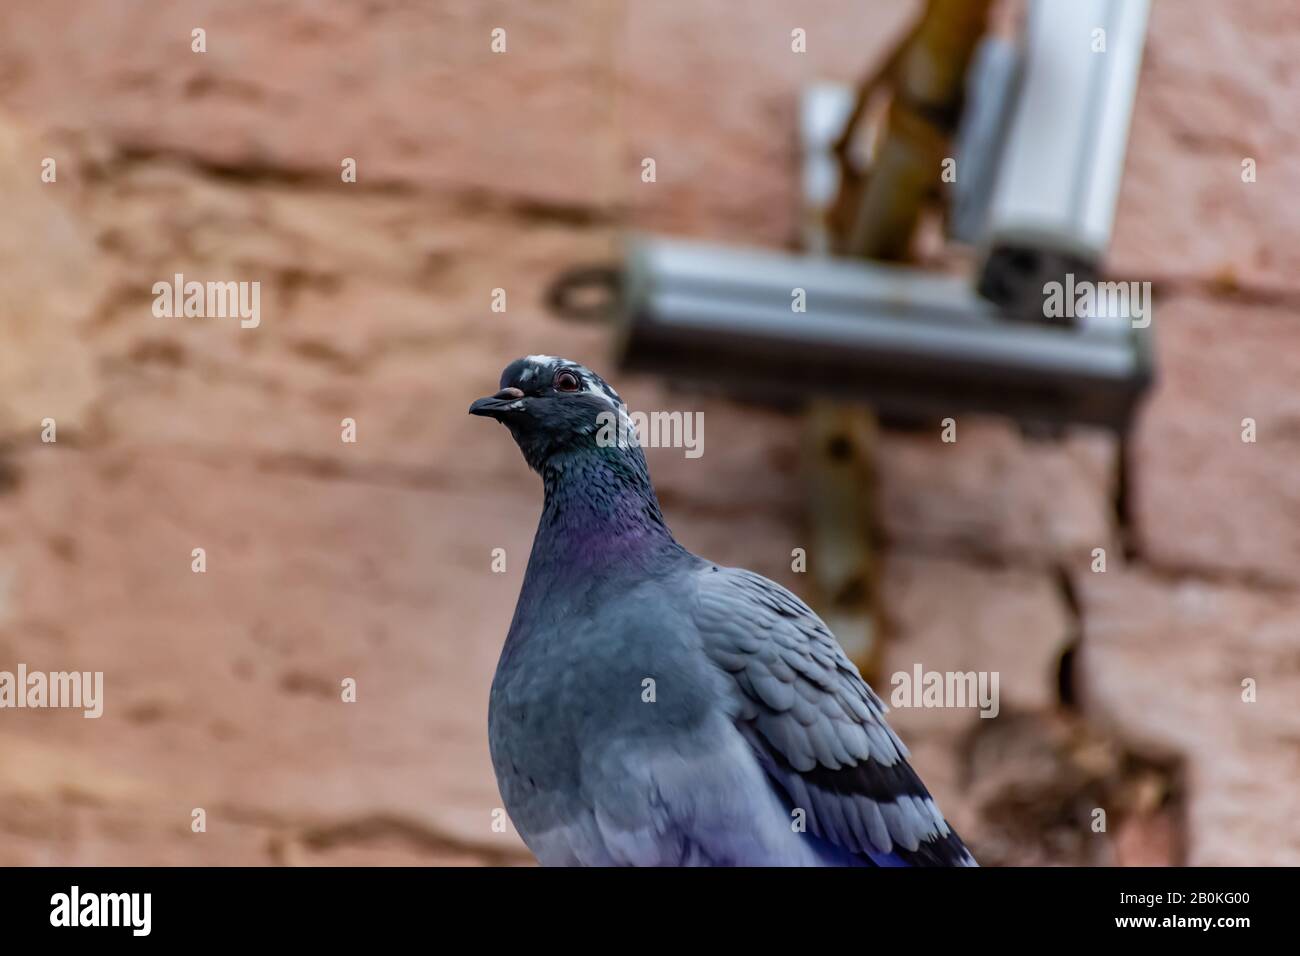 Eine urbane Taube, die auf einem Dach schwungvoll und witzig mit dem Kopf auf die Kamera schaute, als ob sie eklatant wäre oder eine Frage hätte Stockfoto